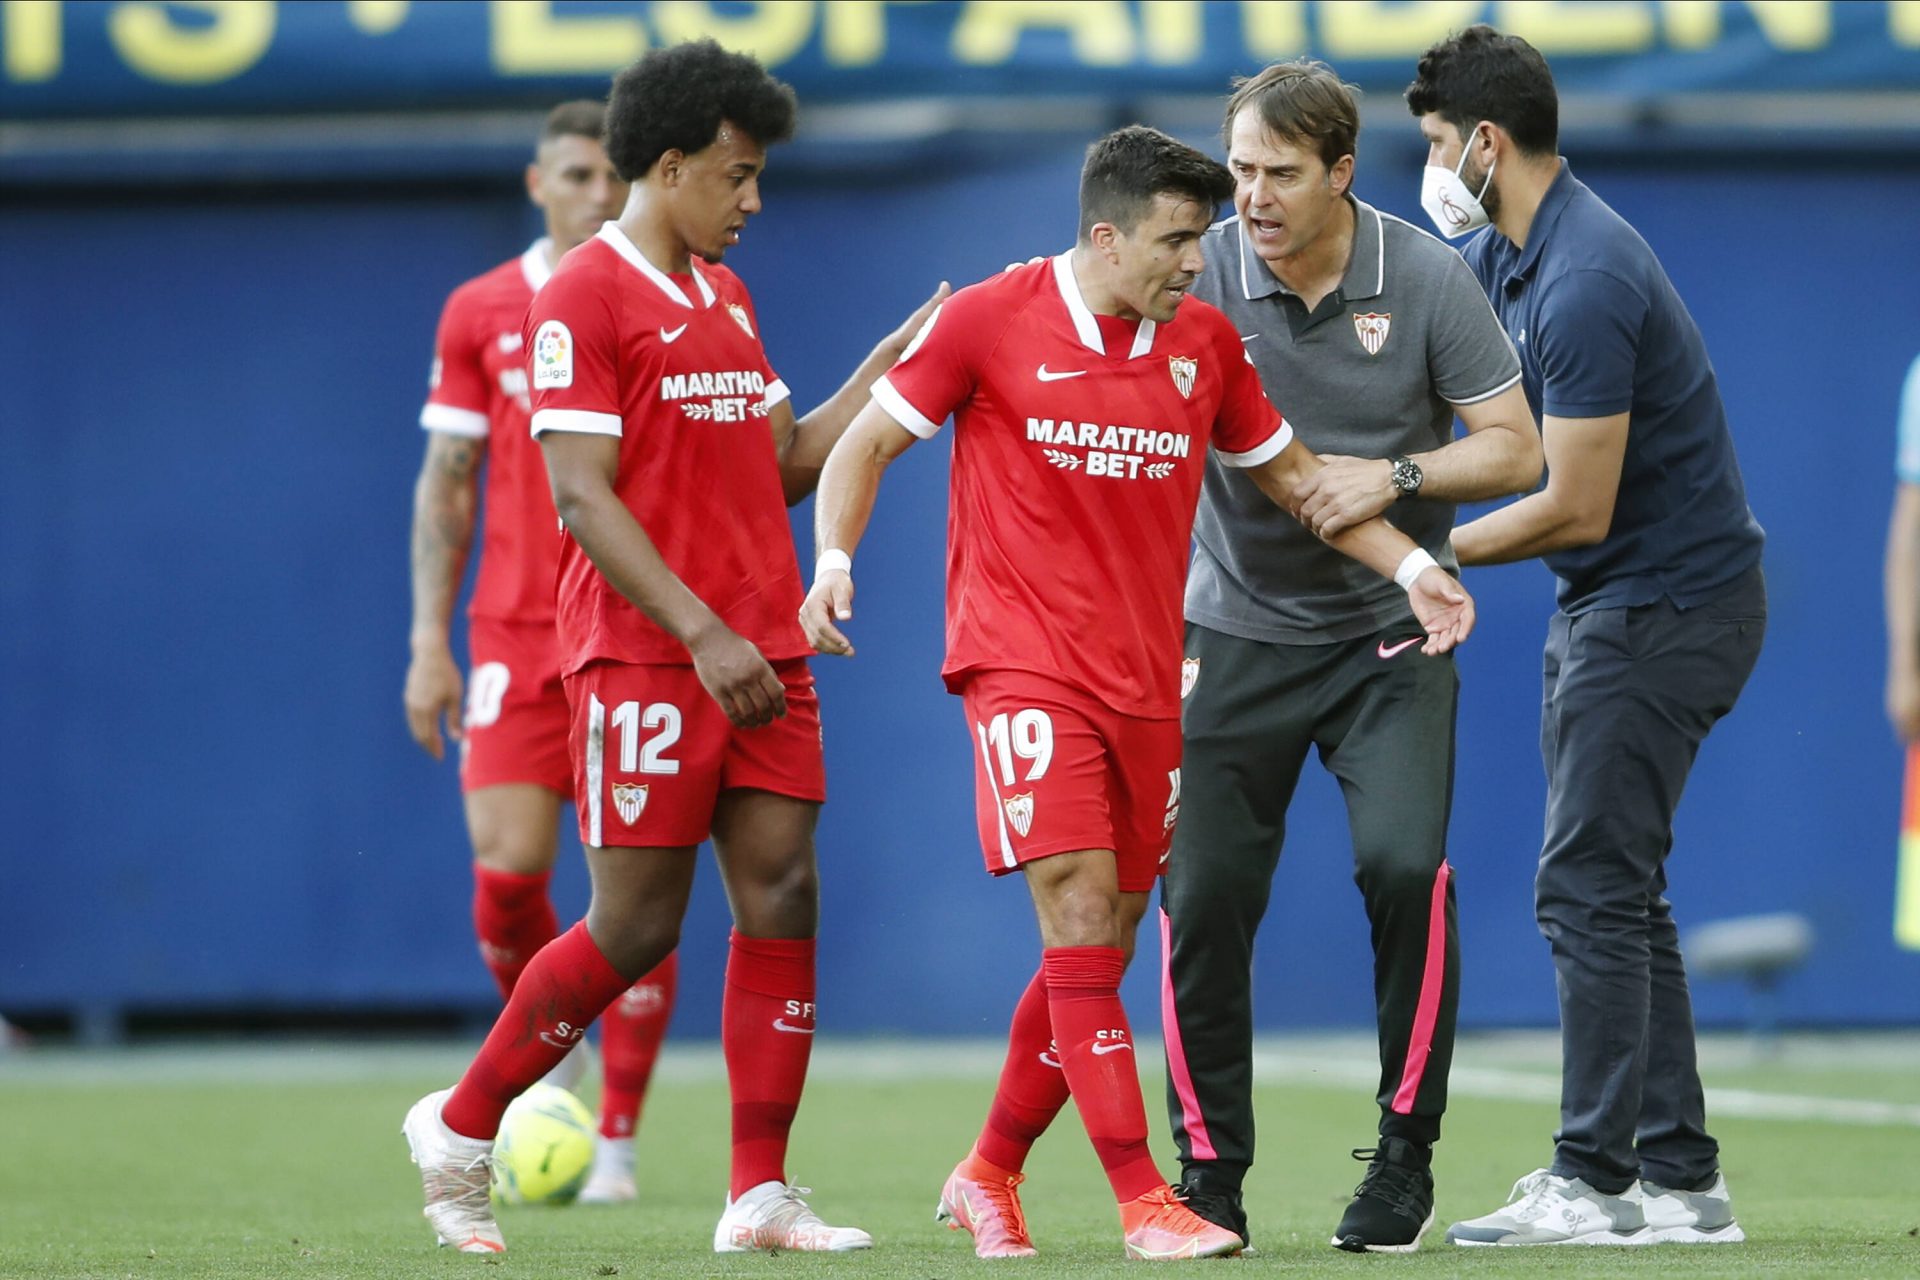 El Sevilla FC cayó por 4-0 contra el Villarreal y con las malas noticias de la expulsión de Diego Carlos